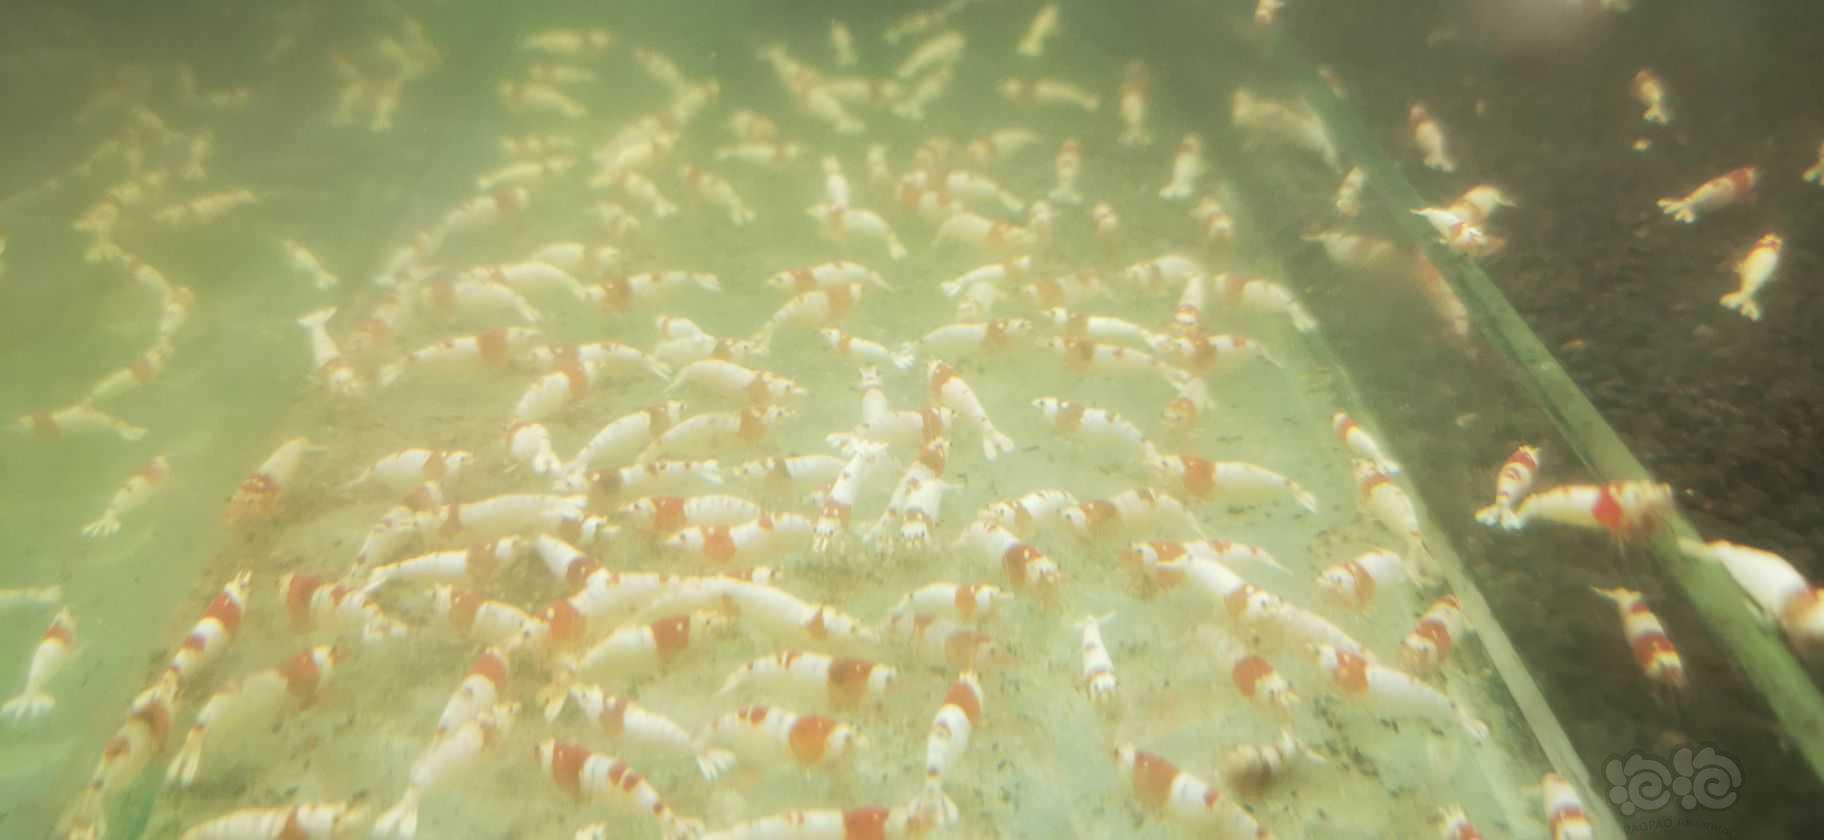 【水晶虾】出售红白母虾母虾母虾-图4